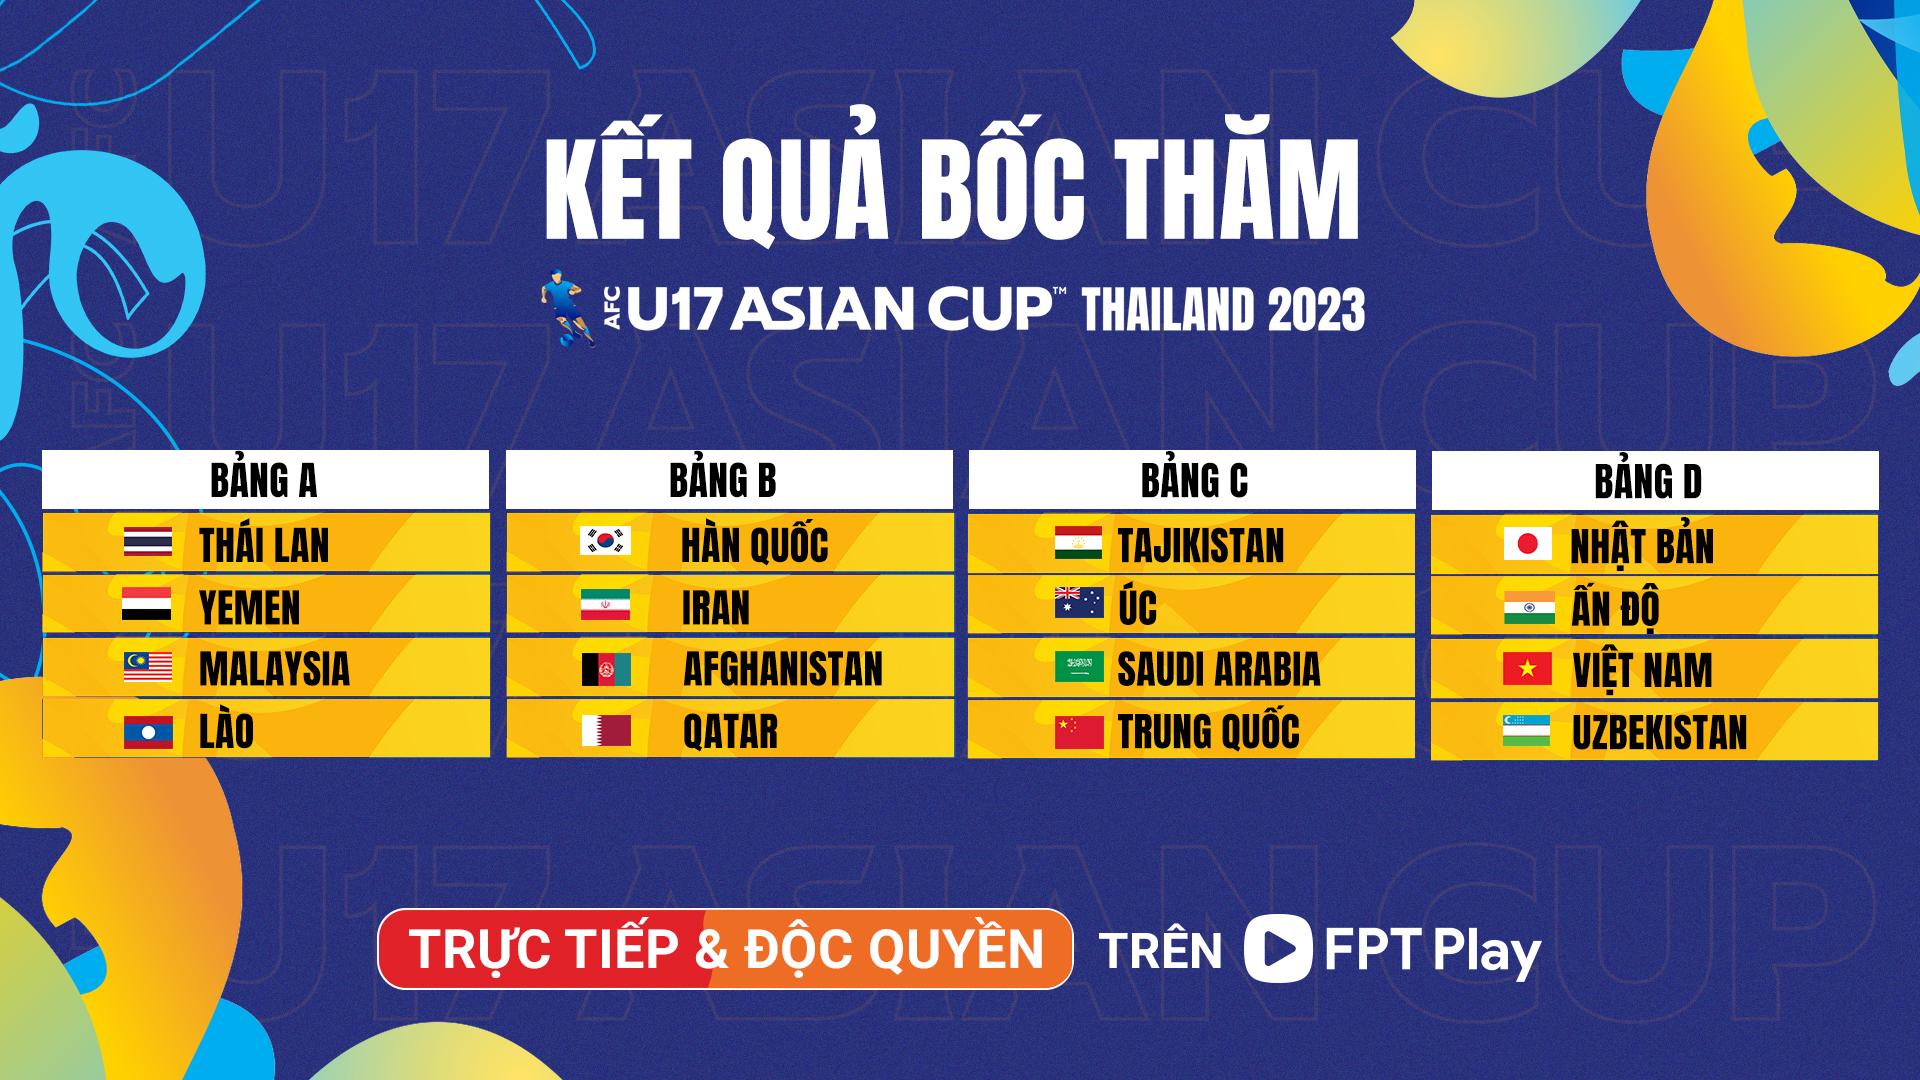 Xem AFC U17 Asian Cup 2023 độc quyền trên FPT Play - Ảnh 1.